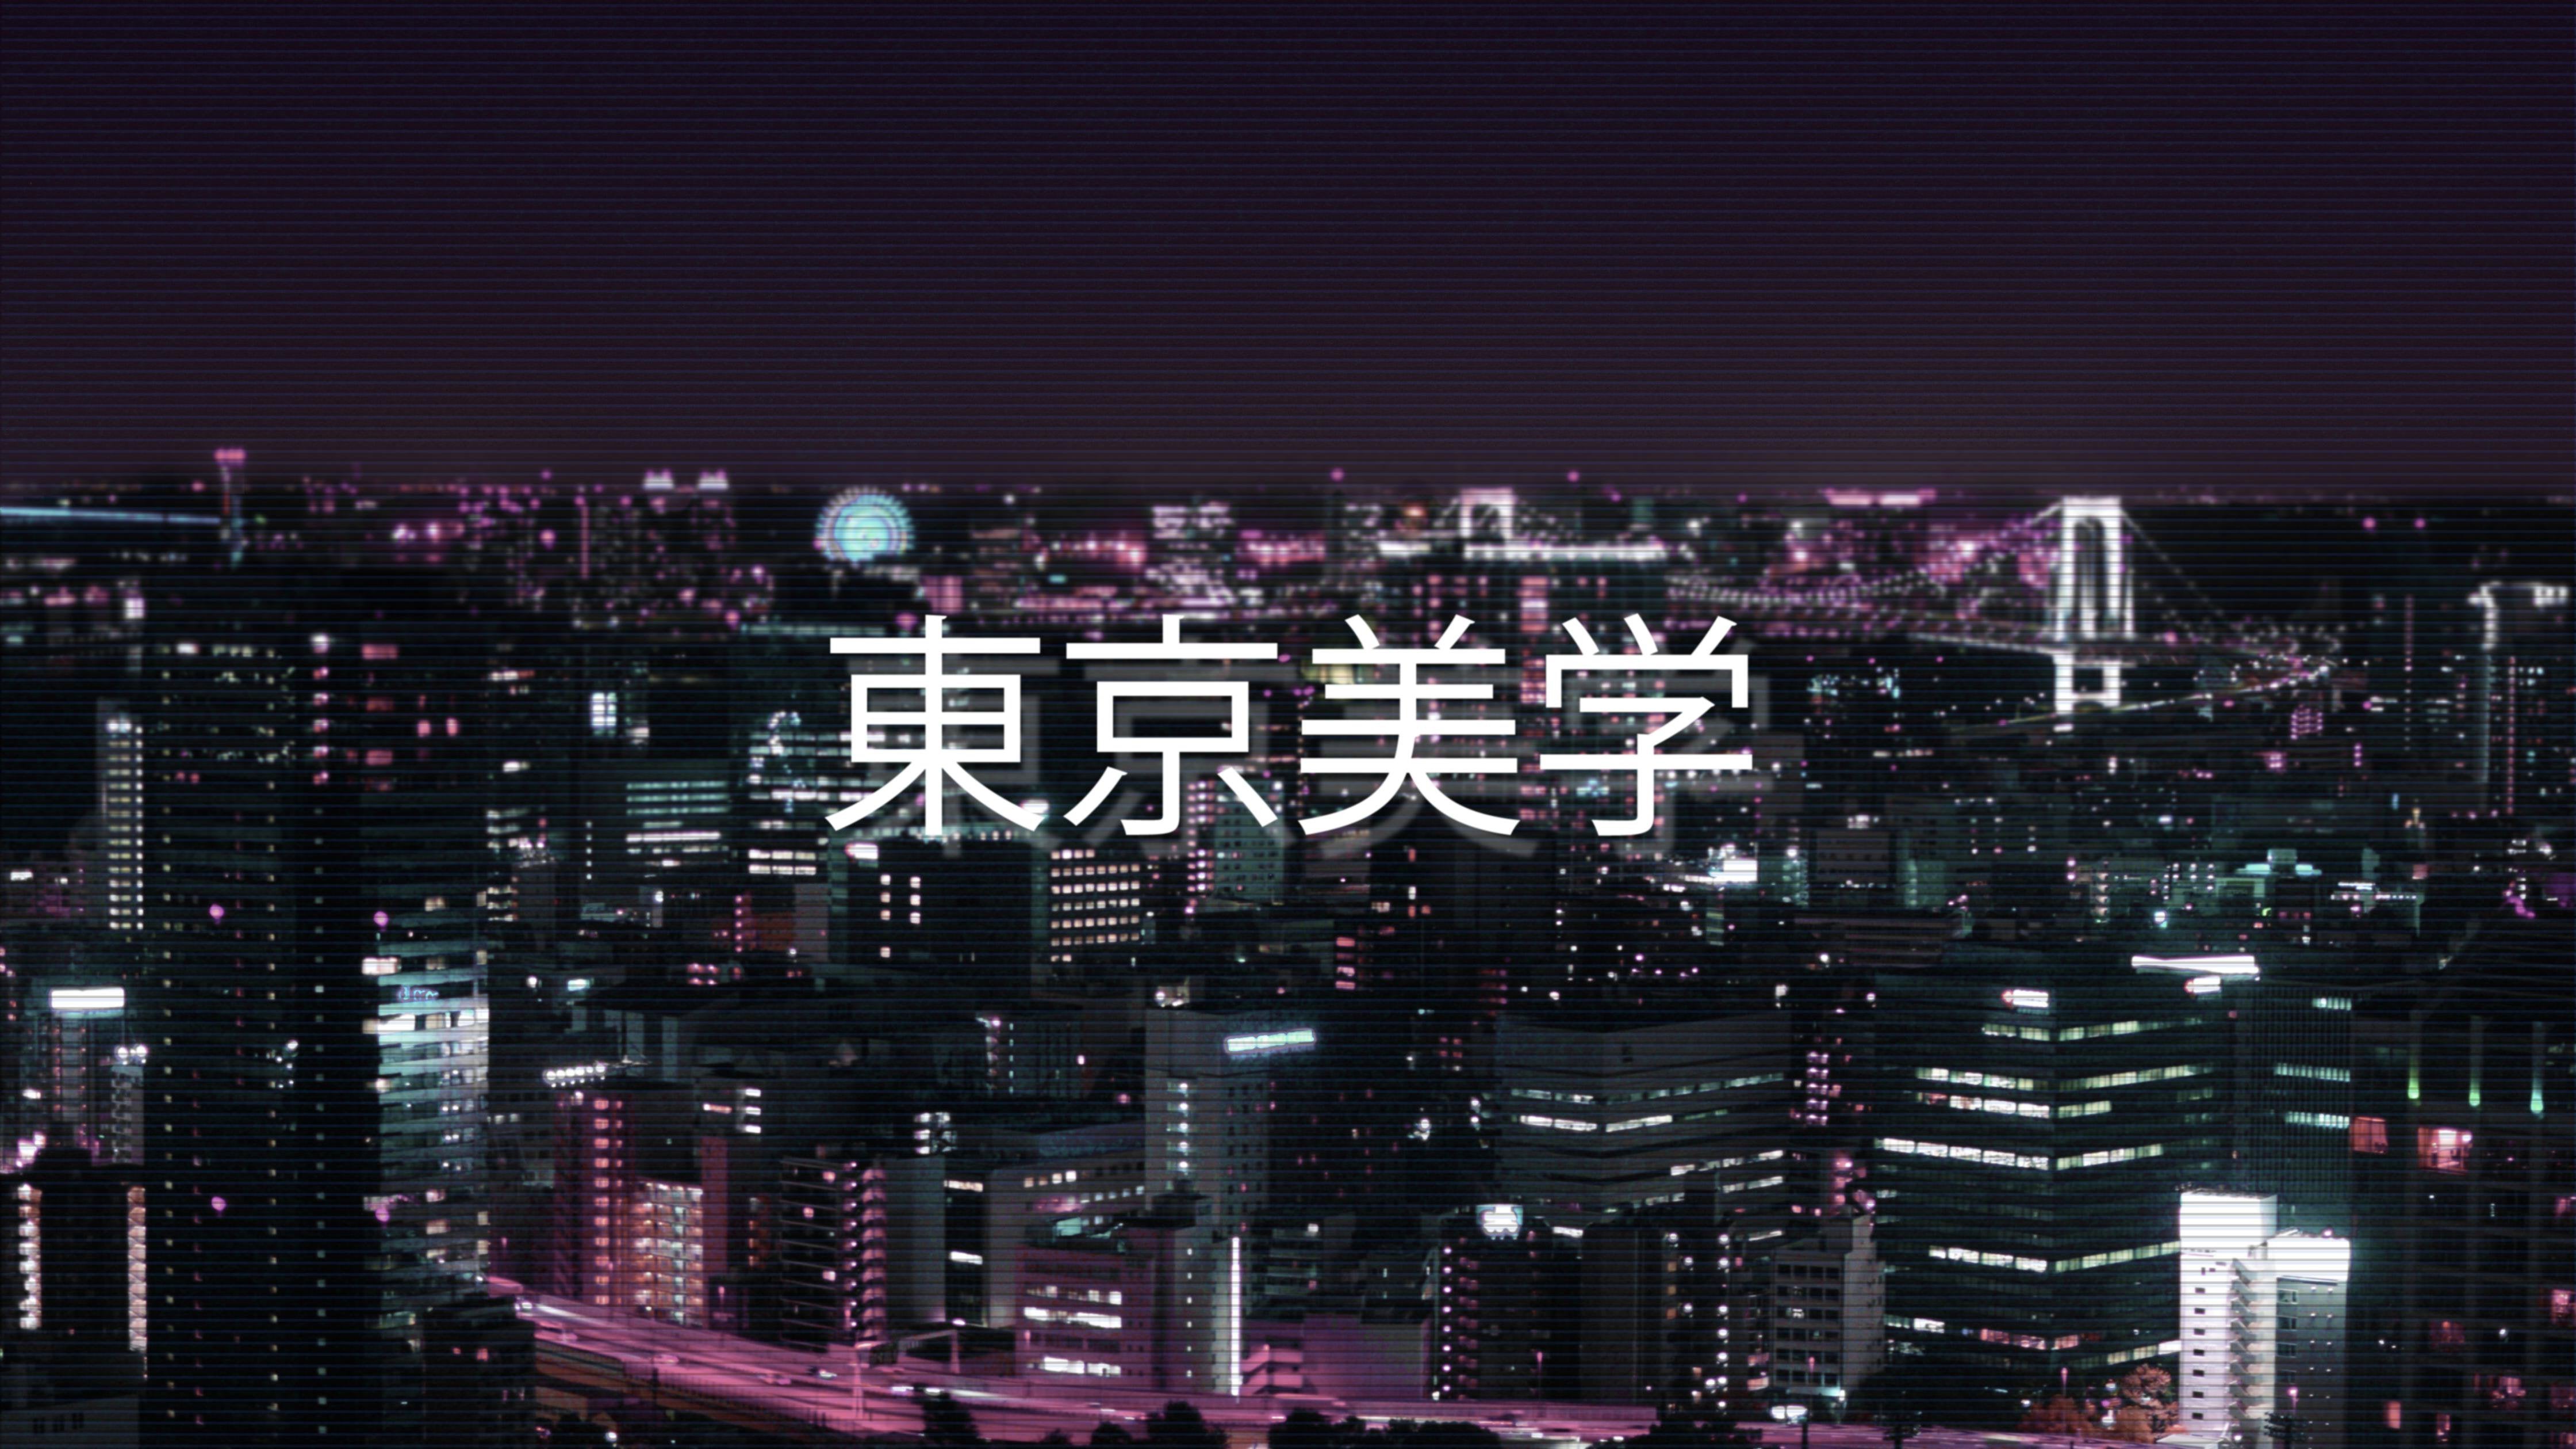 Tokyo by Night [4480×2520] [OC]